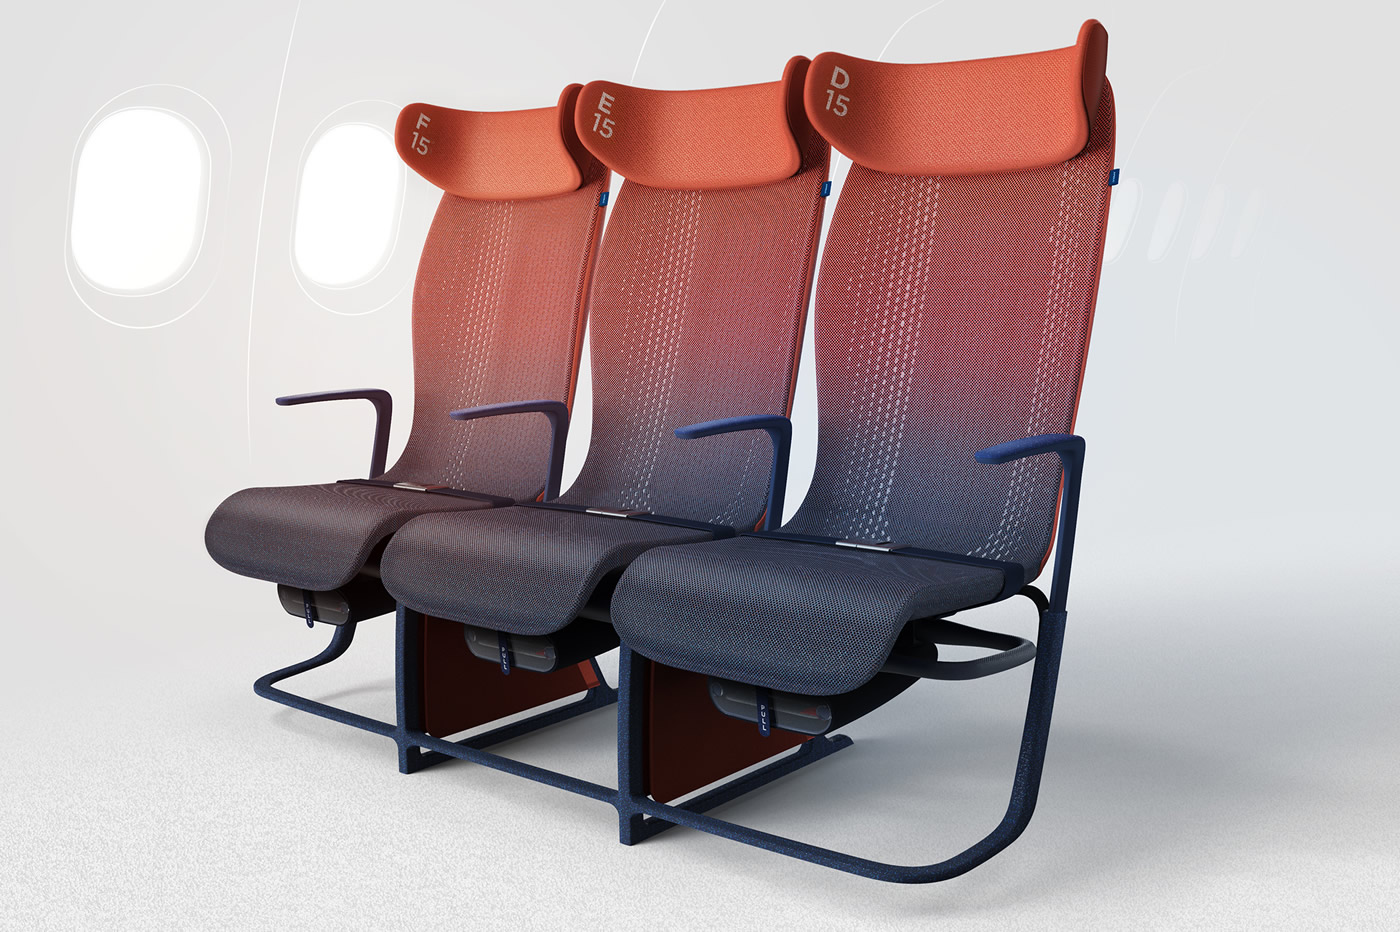 Airbus prépare des sièges intelligents et connectés pour la classe éco